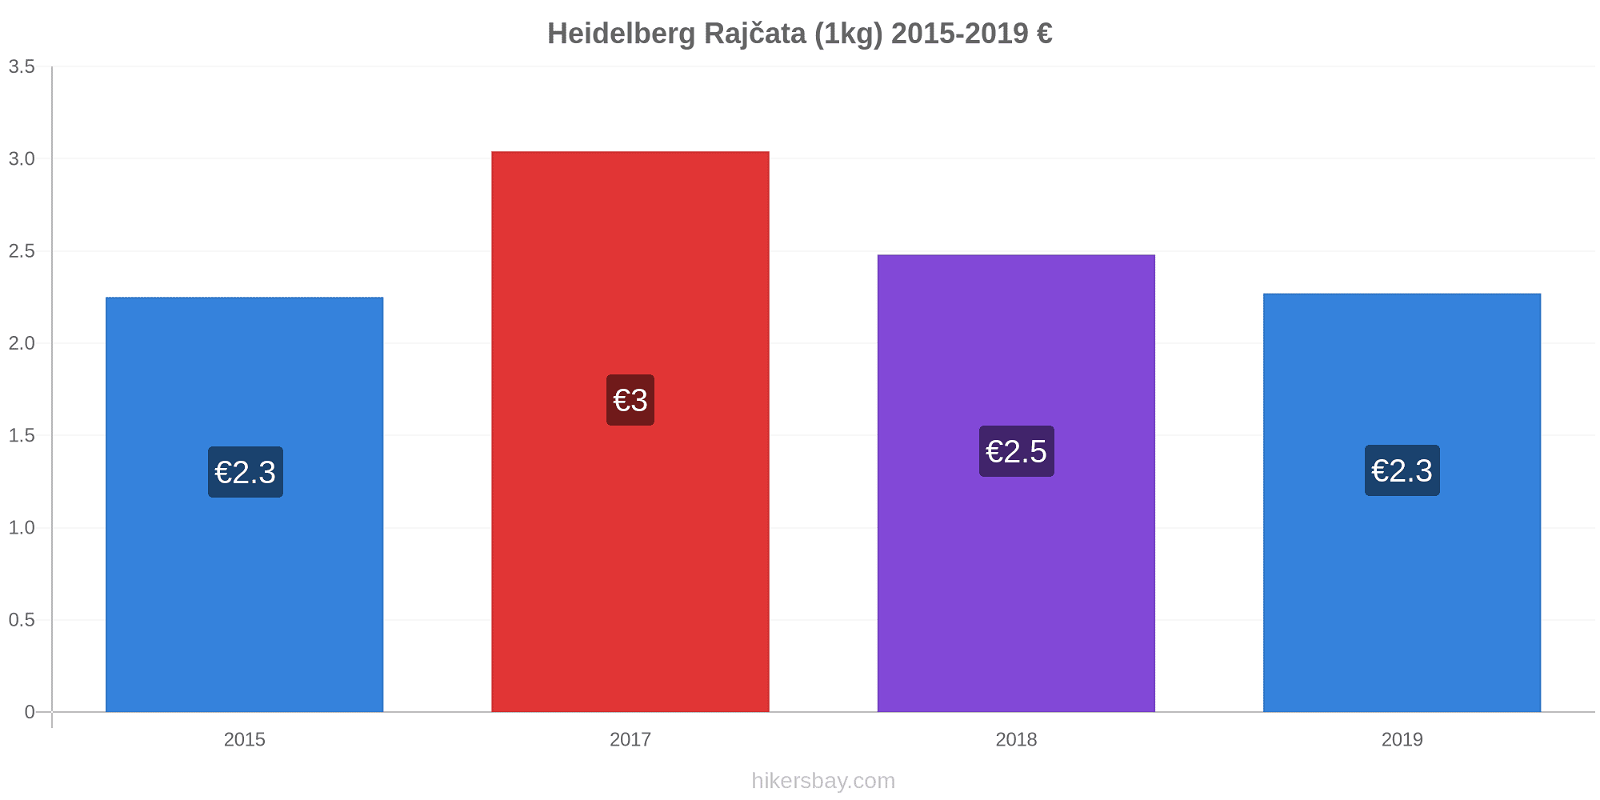 Heidelberg změny cen Rajčata (1kg) hikersbay.com